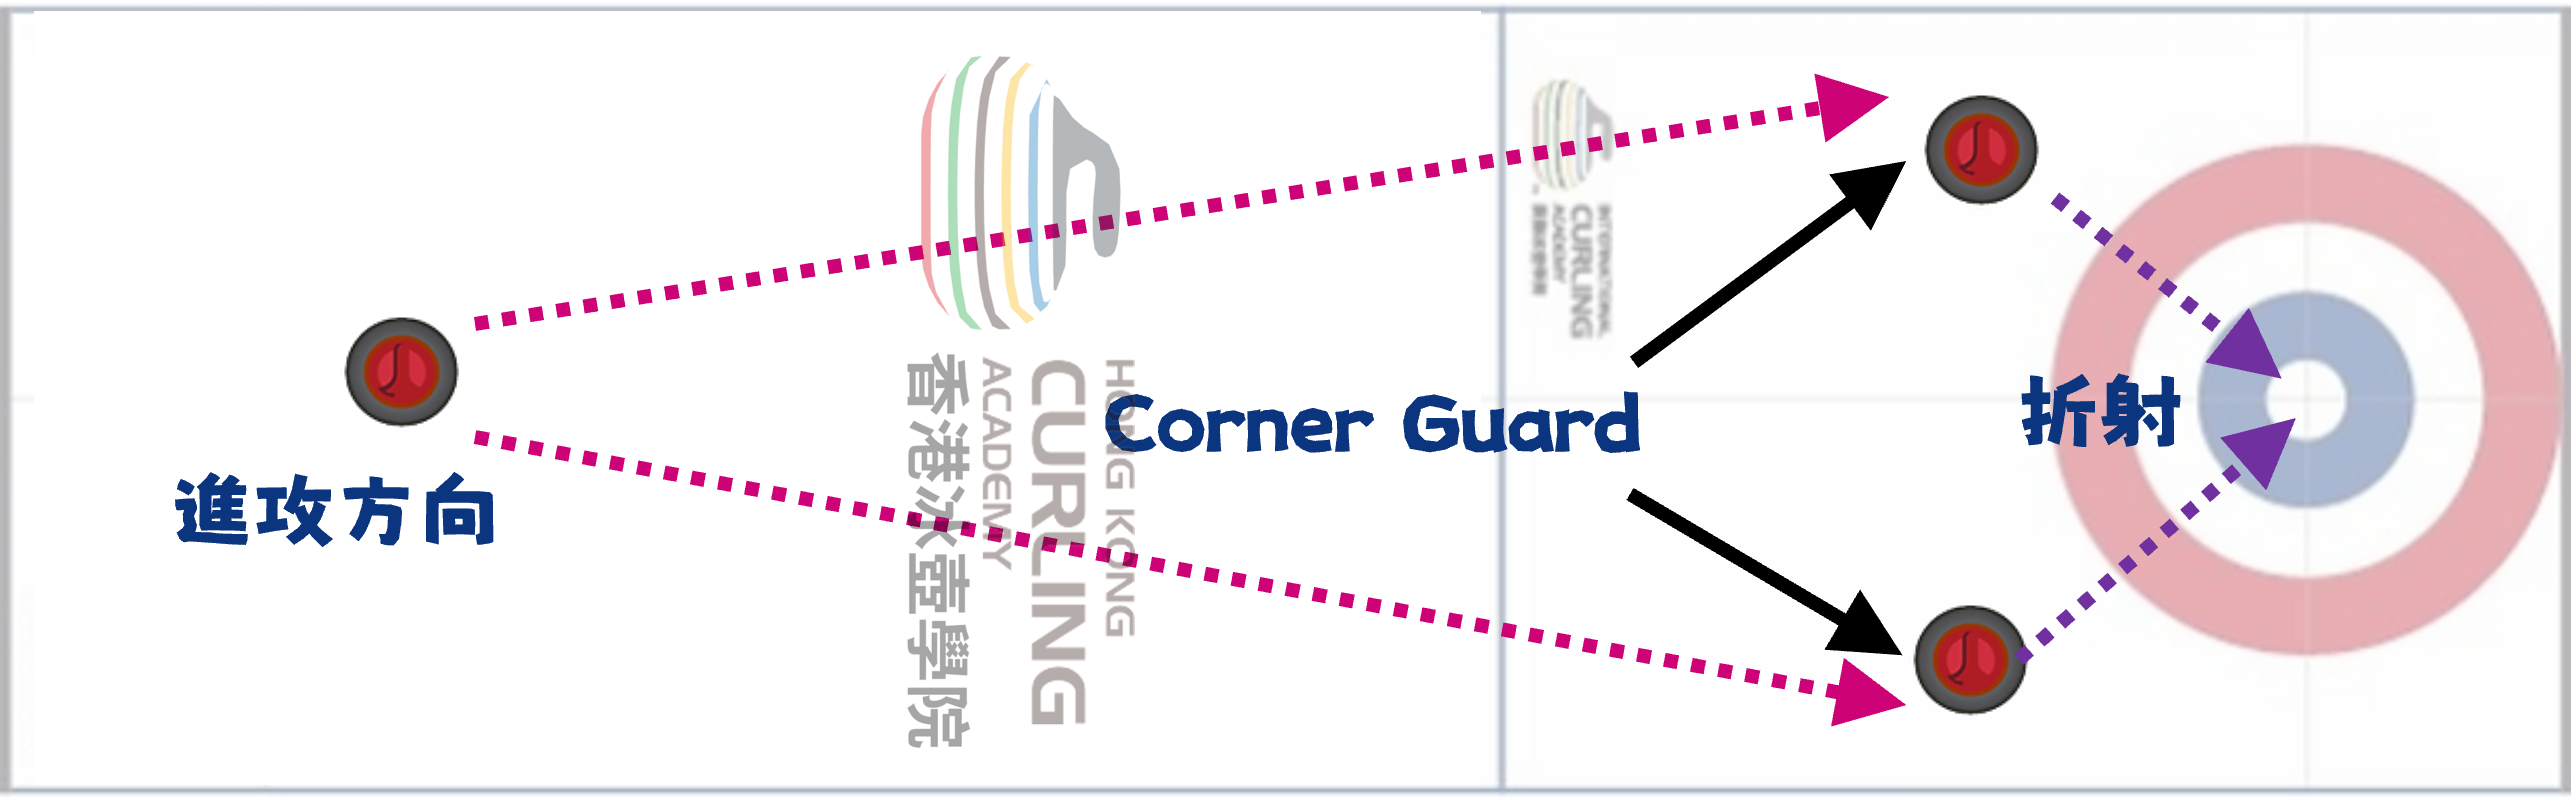 冰壺比賽中的Corner Guard